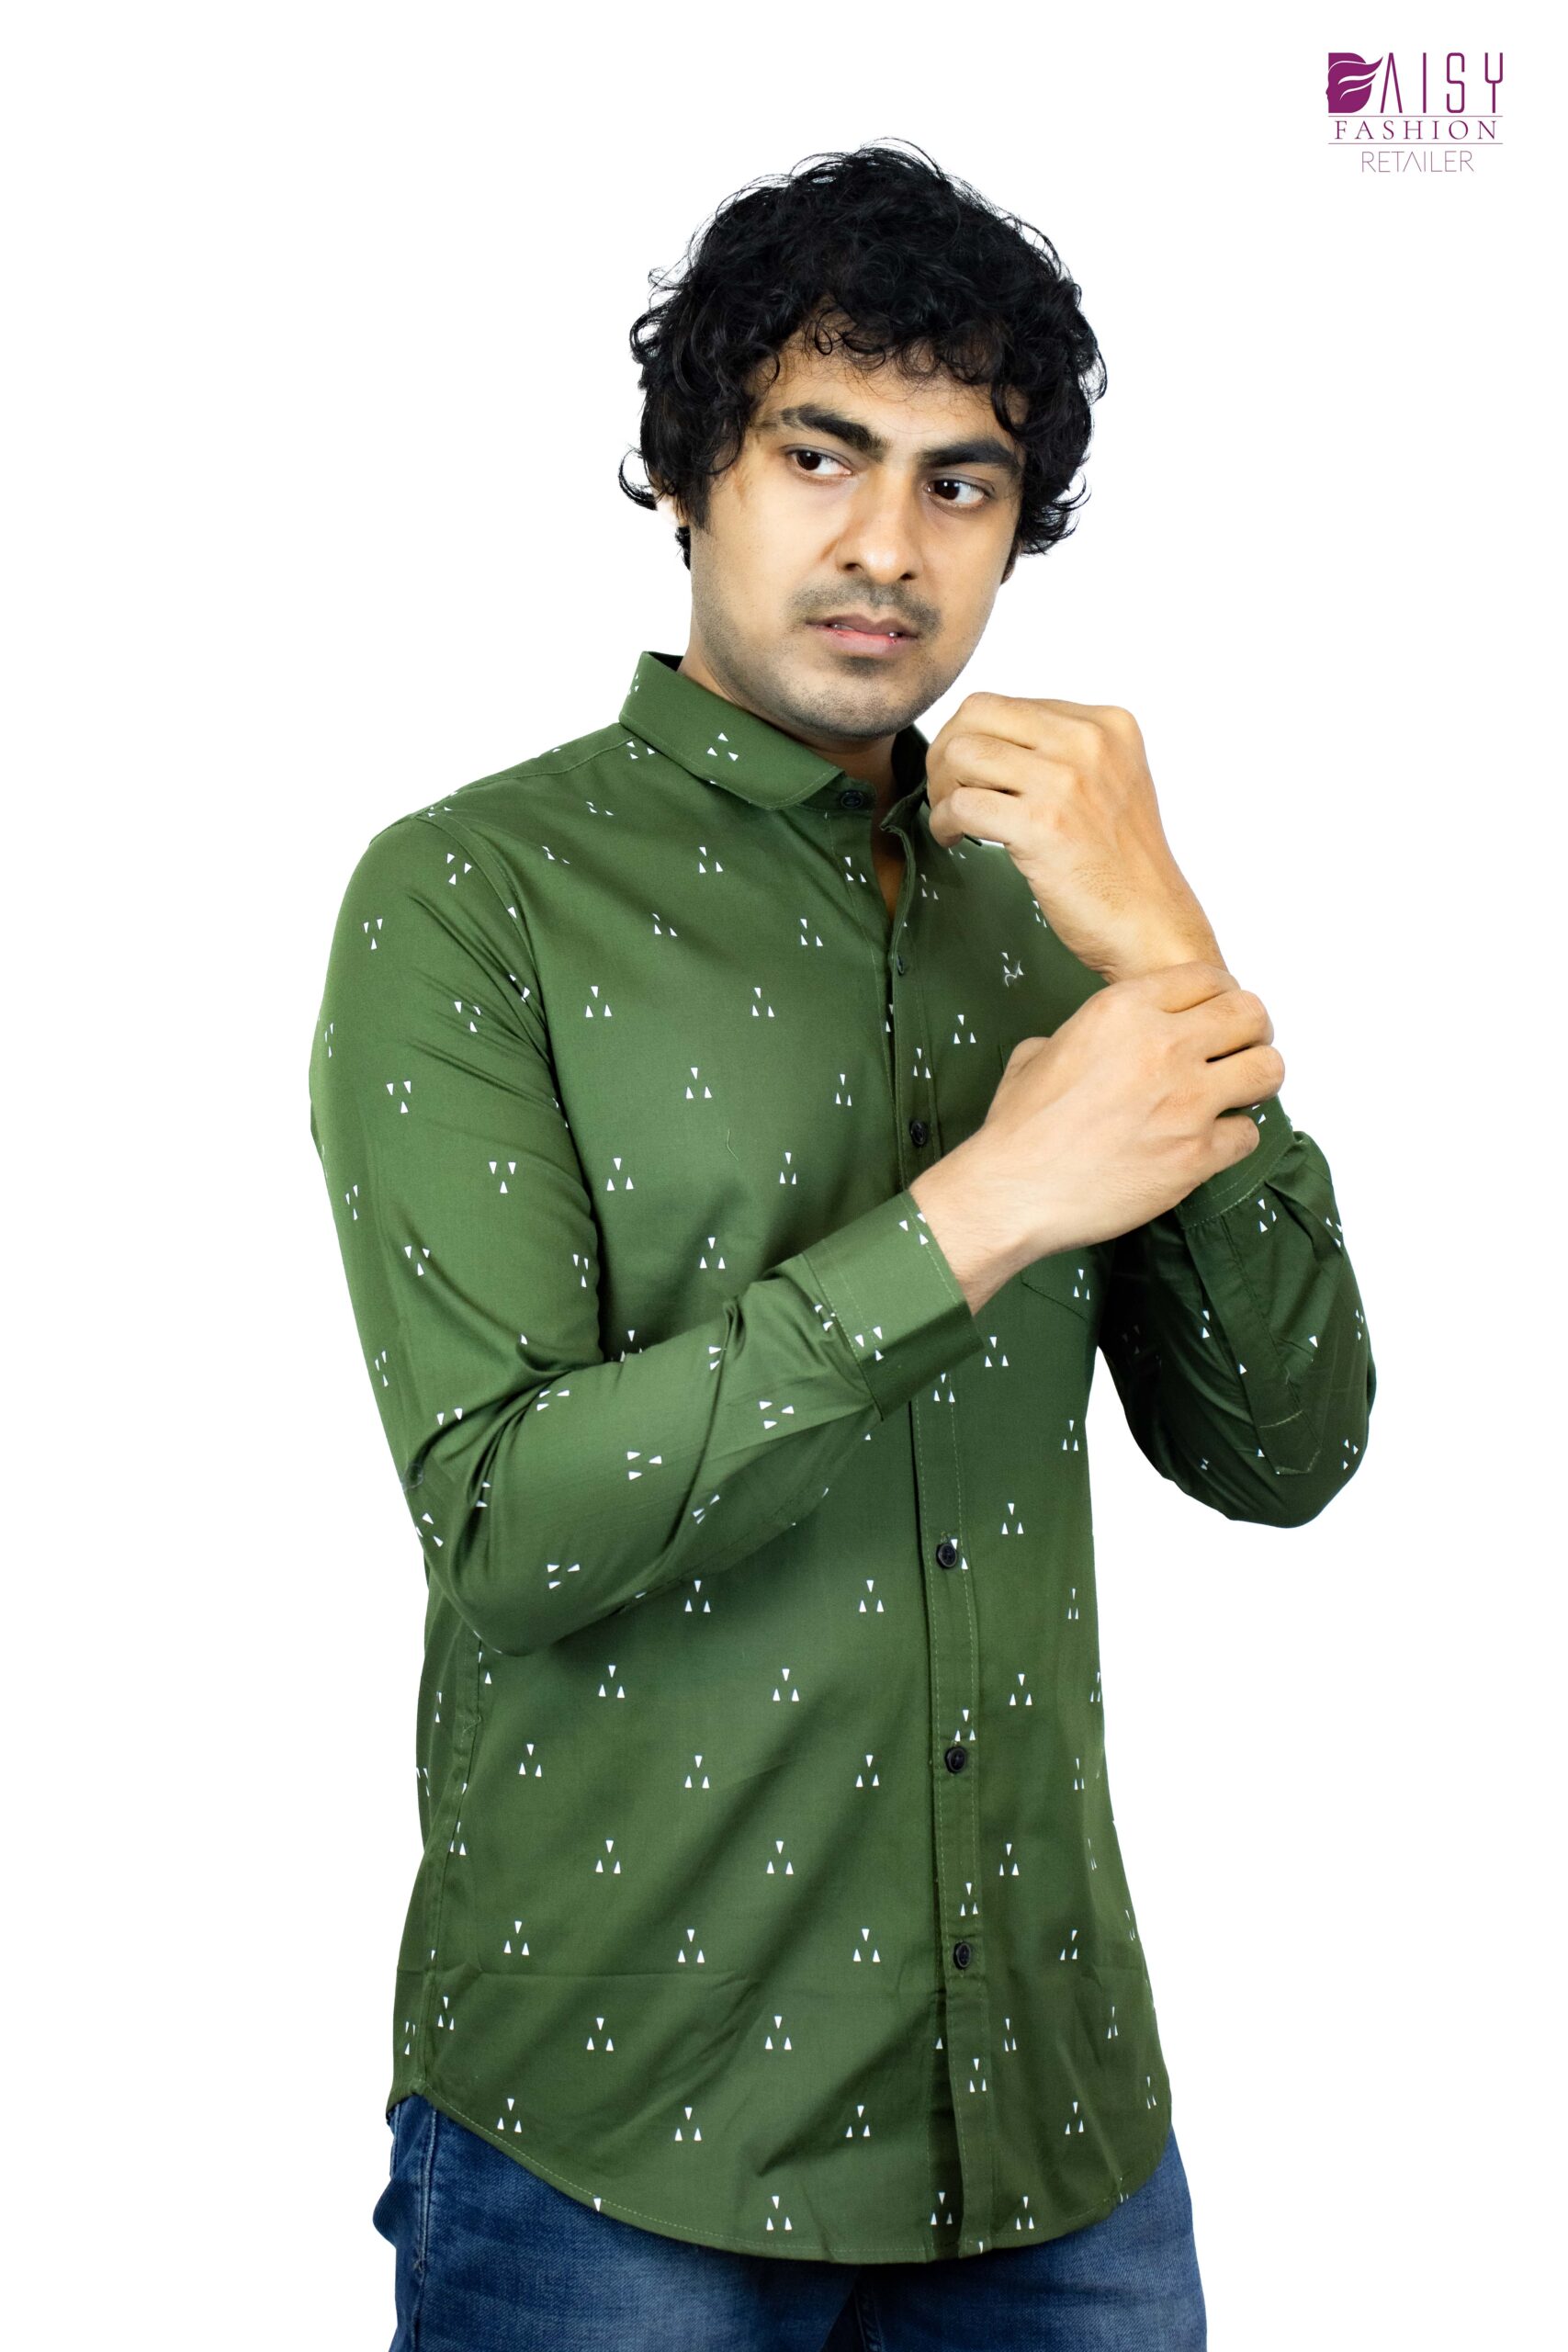 Printed Green Shirt